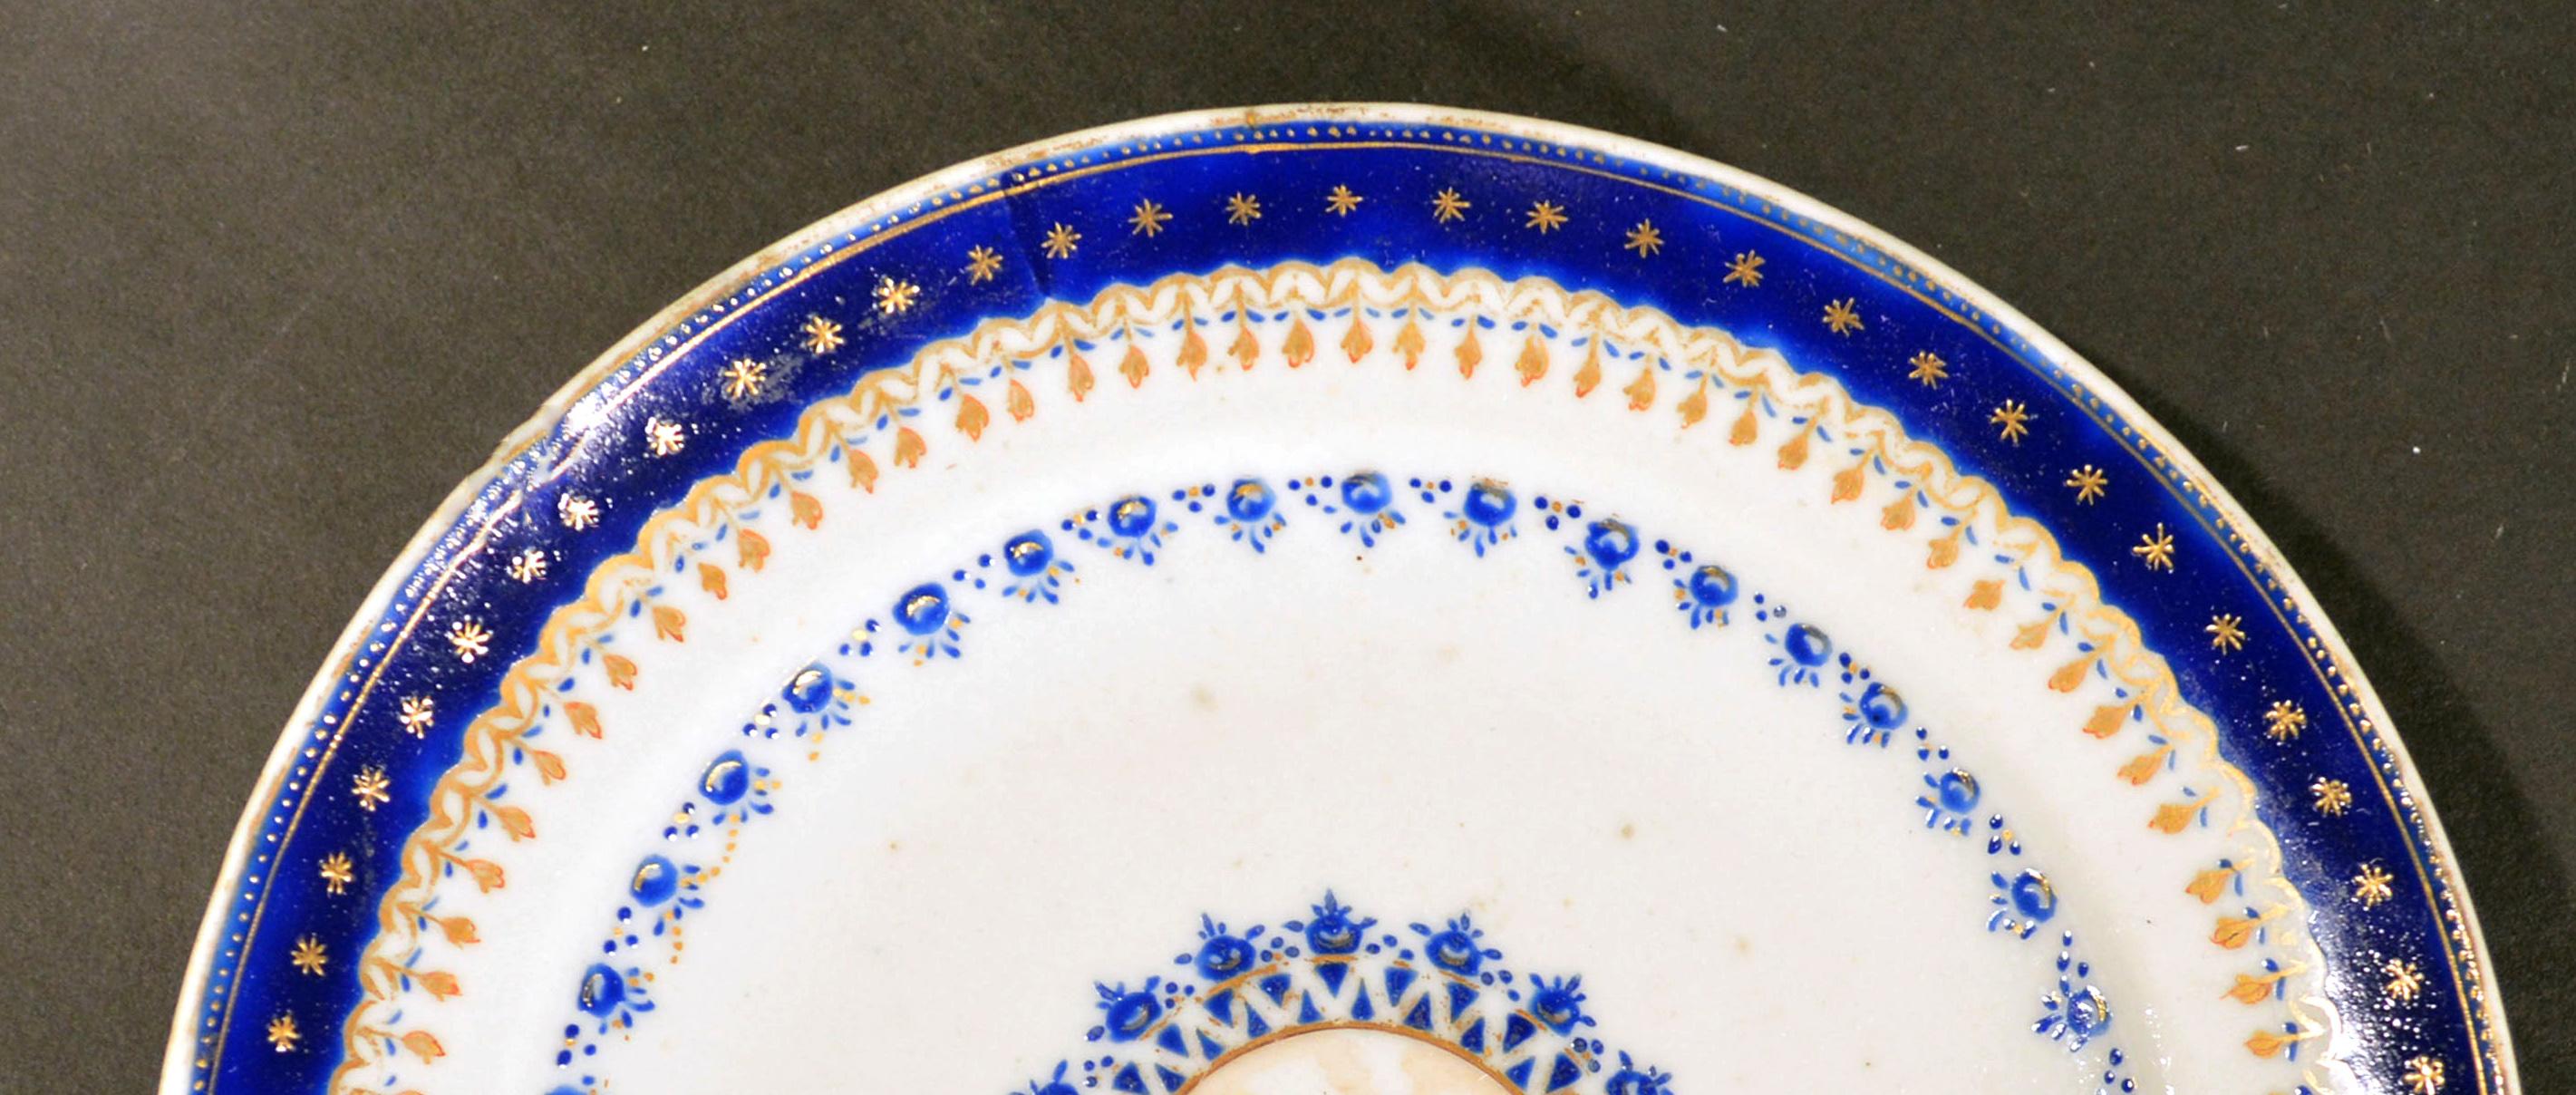 Assiette d'exportation chinoise en porcelaine émaillée bleue, fabriquée pour le marché américain, 
vers 1785.

Cette petite assiette d'exportation chinoise du marché américain présente un rond central en brun représentant un groupe non encore